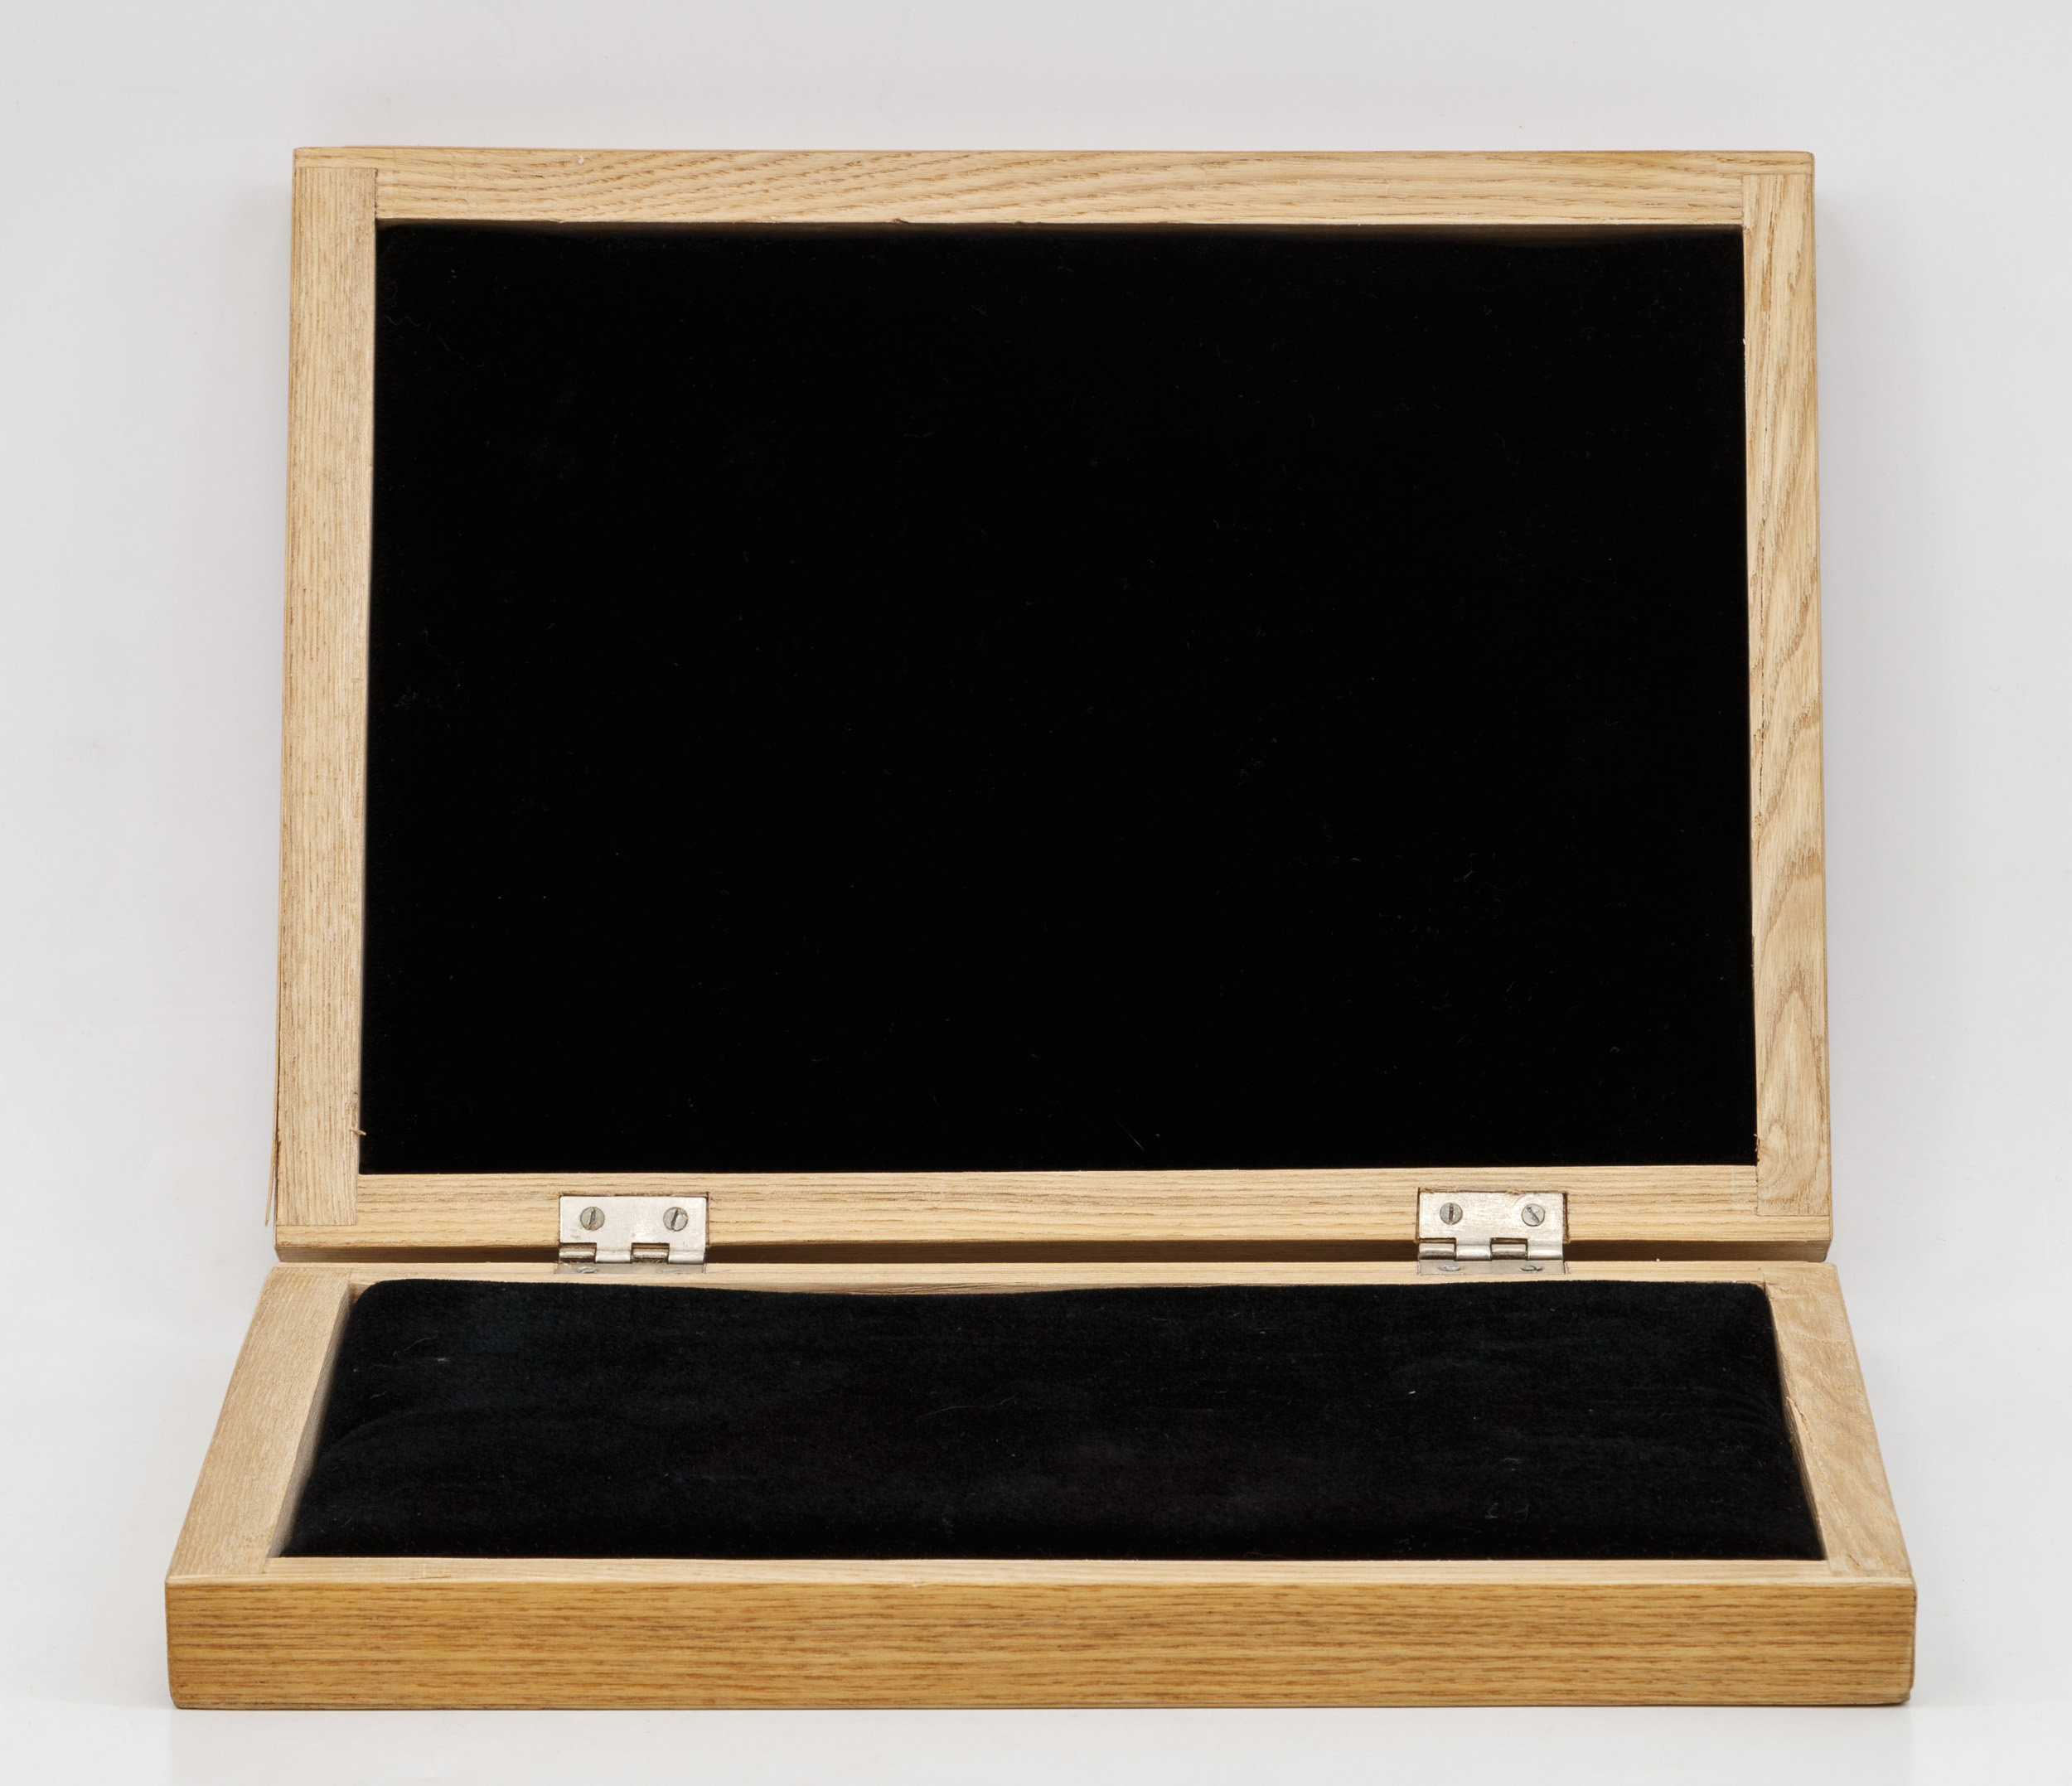 Коробка для хранения орденов и медалей (2)